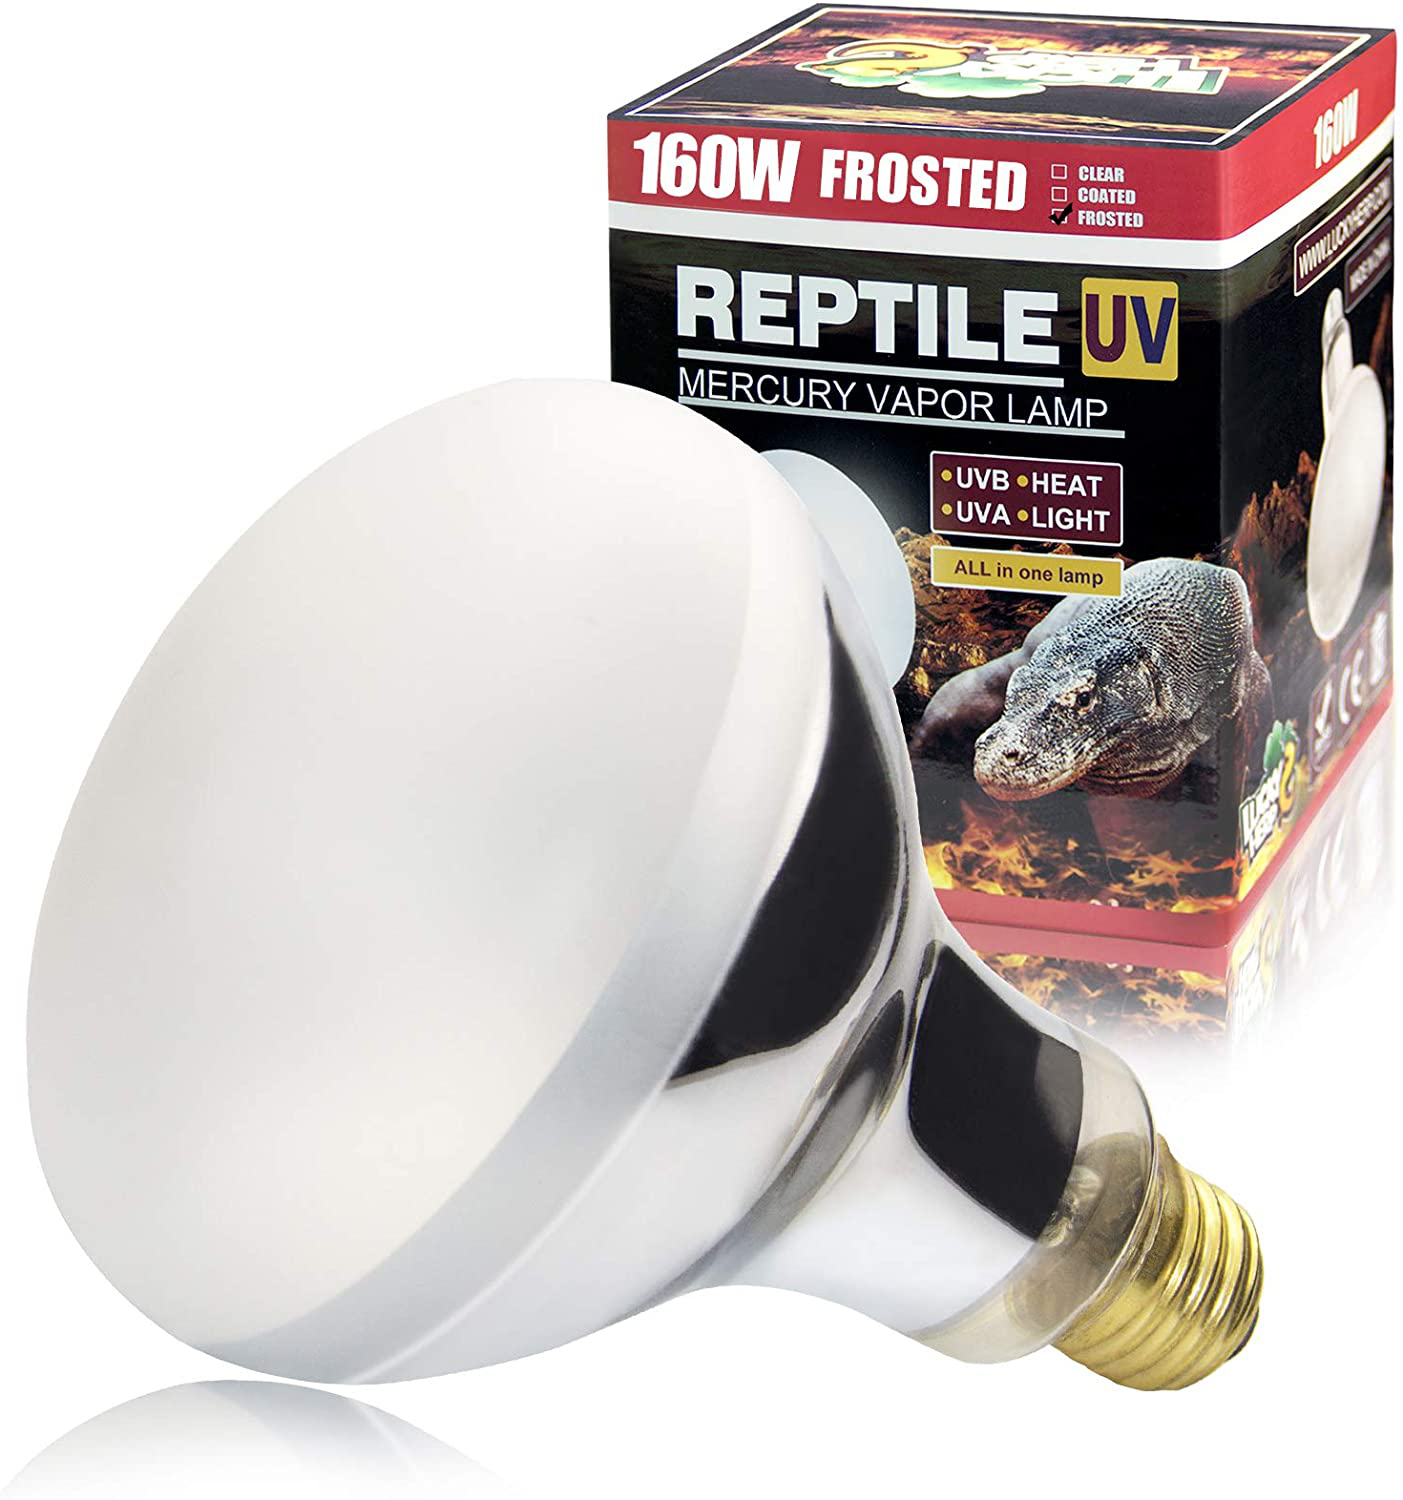 LUCKY HERP UVA+UVB Mercury Vapor Bulb High Intensity Self-Ballasted Heat Basking Lamp/Bulb/Light for Reptile and Amphibian